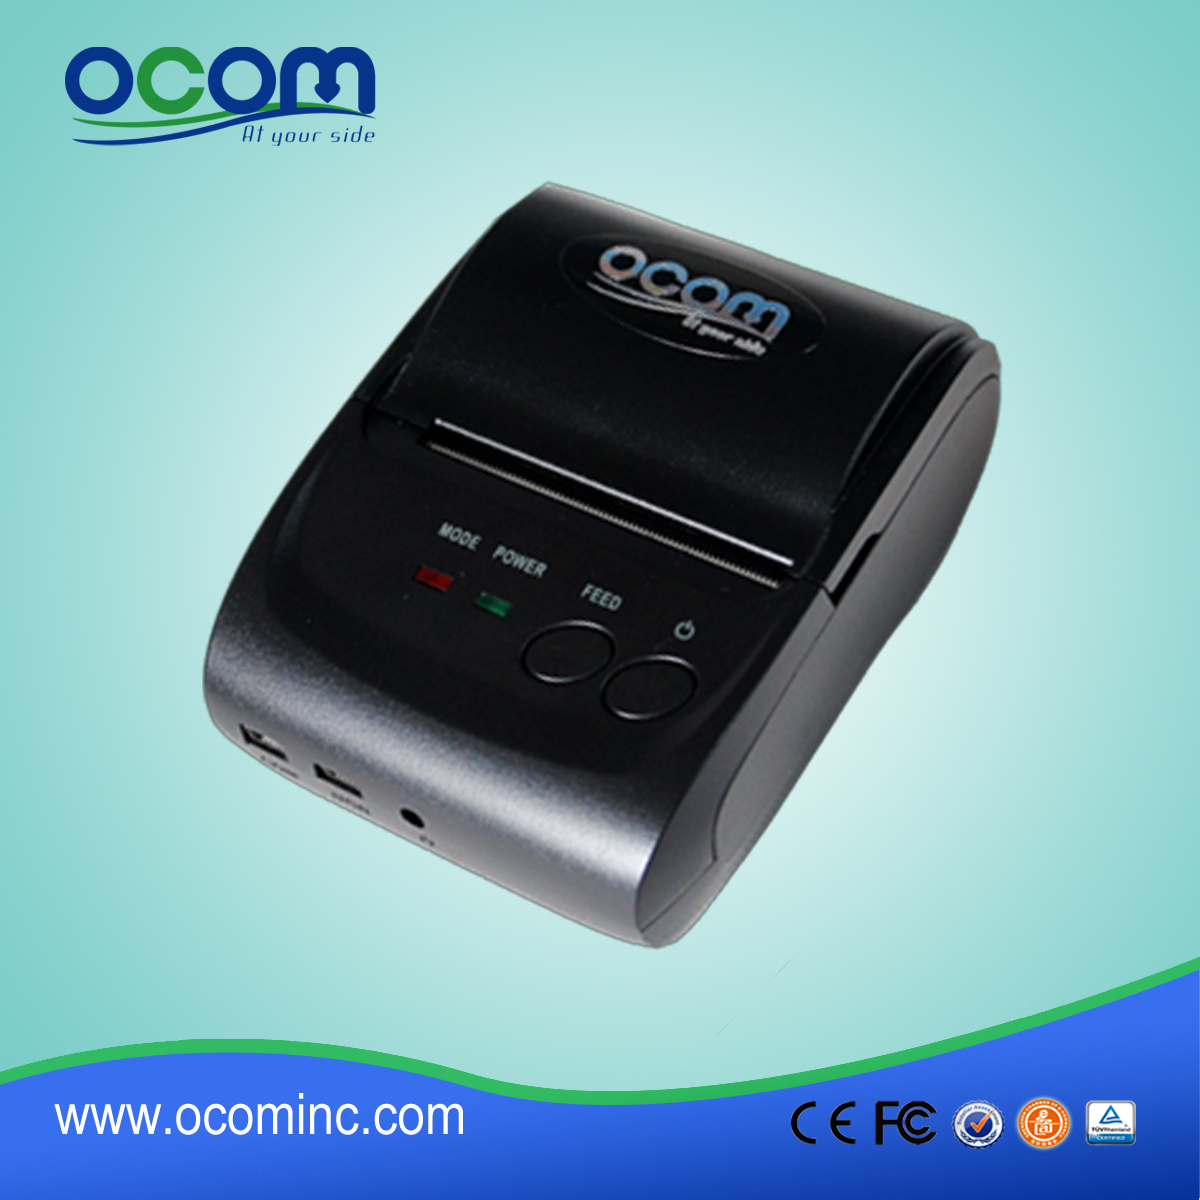 OCPP-M05: مصغرة طابعة بلوتوث المحمولة، ونقاط البيع الطابعة الحرارية